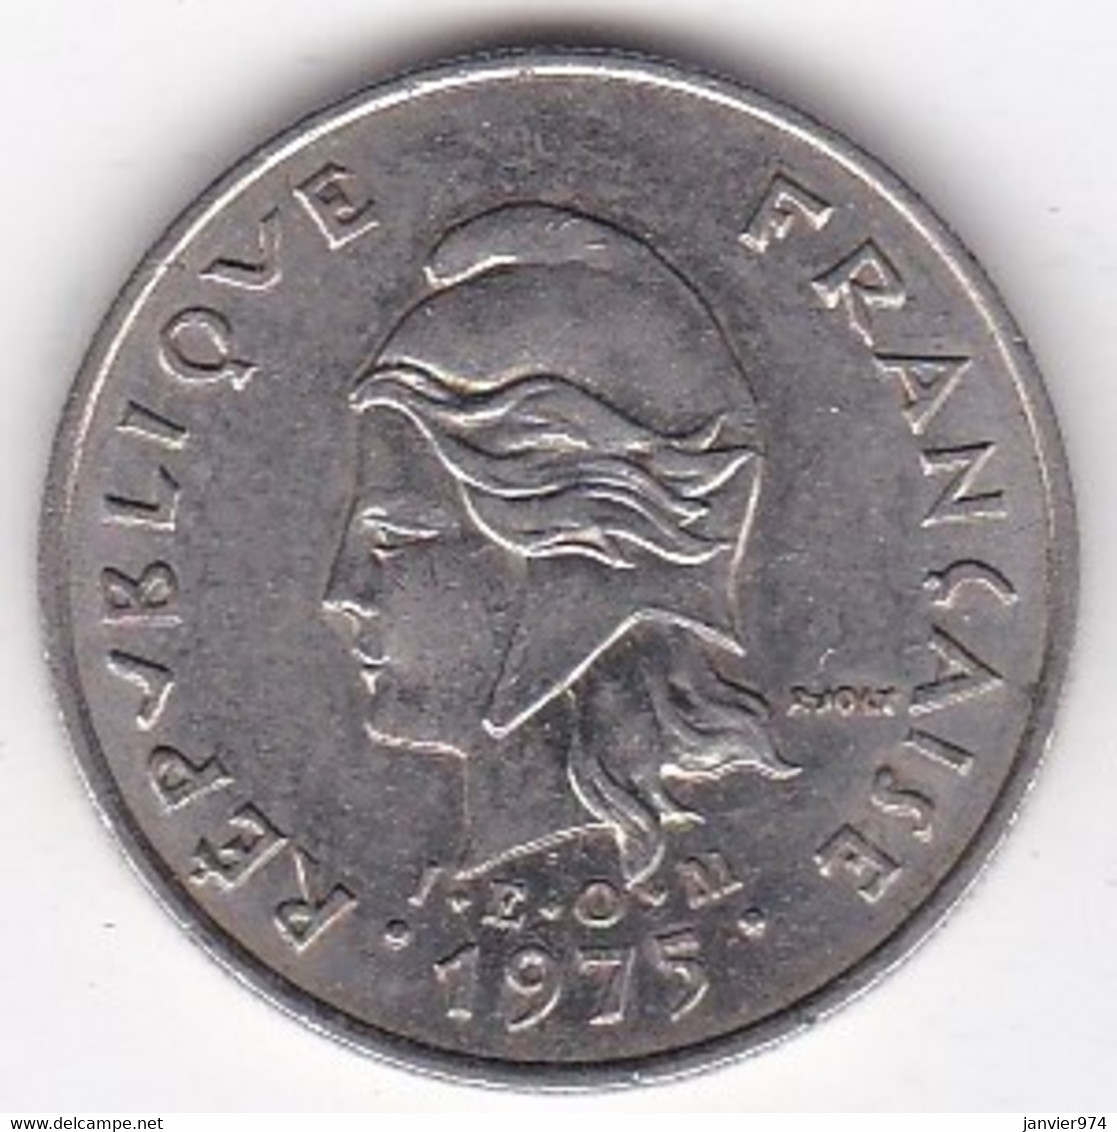 Polynésie Française. 10 Francs 1975 . En Nickel - Französisch-Polynesien